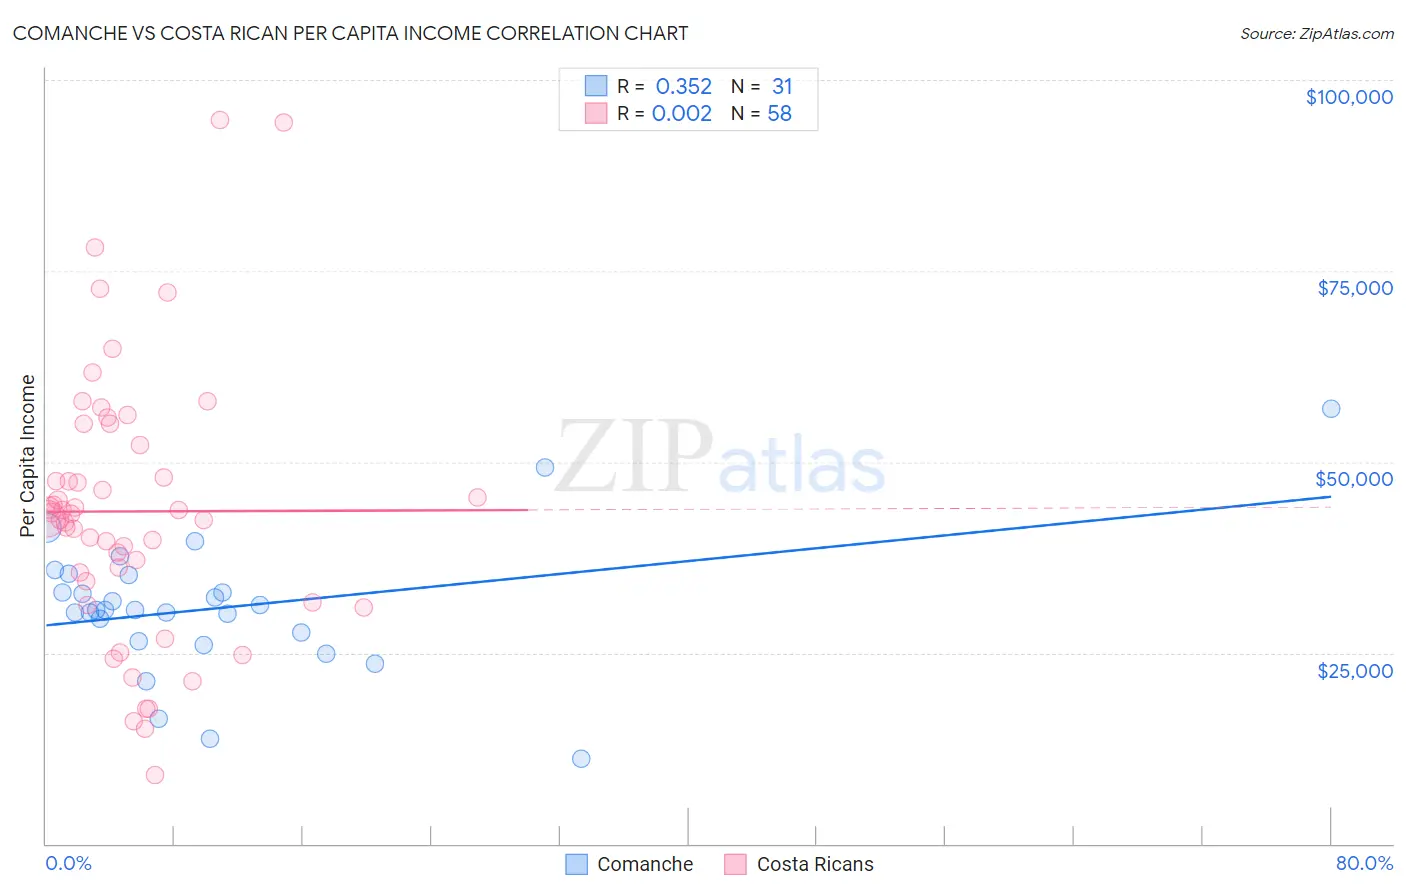 Comanche vs Costa Rican Per Capita Income